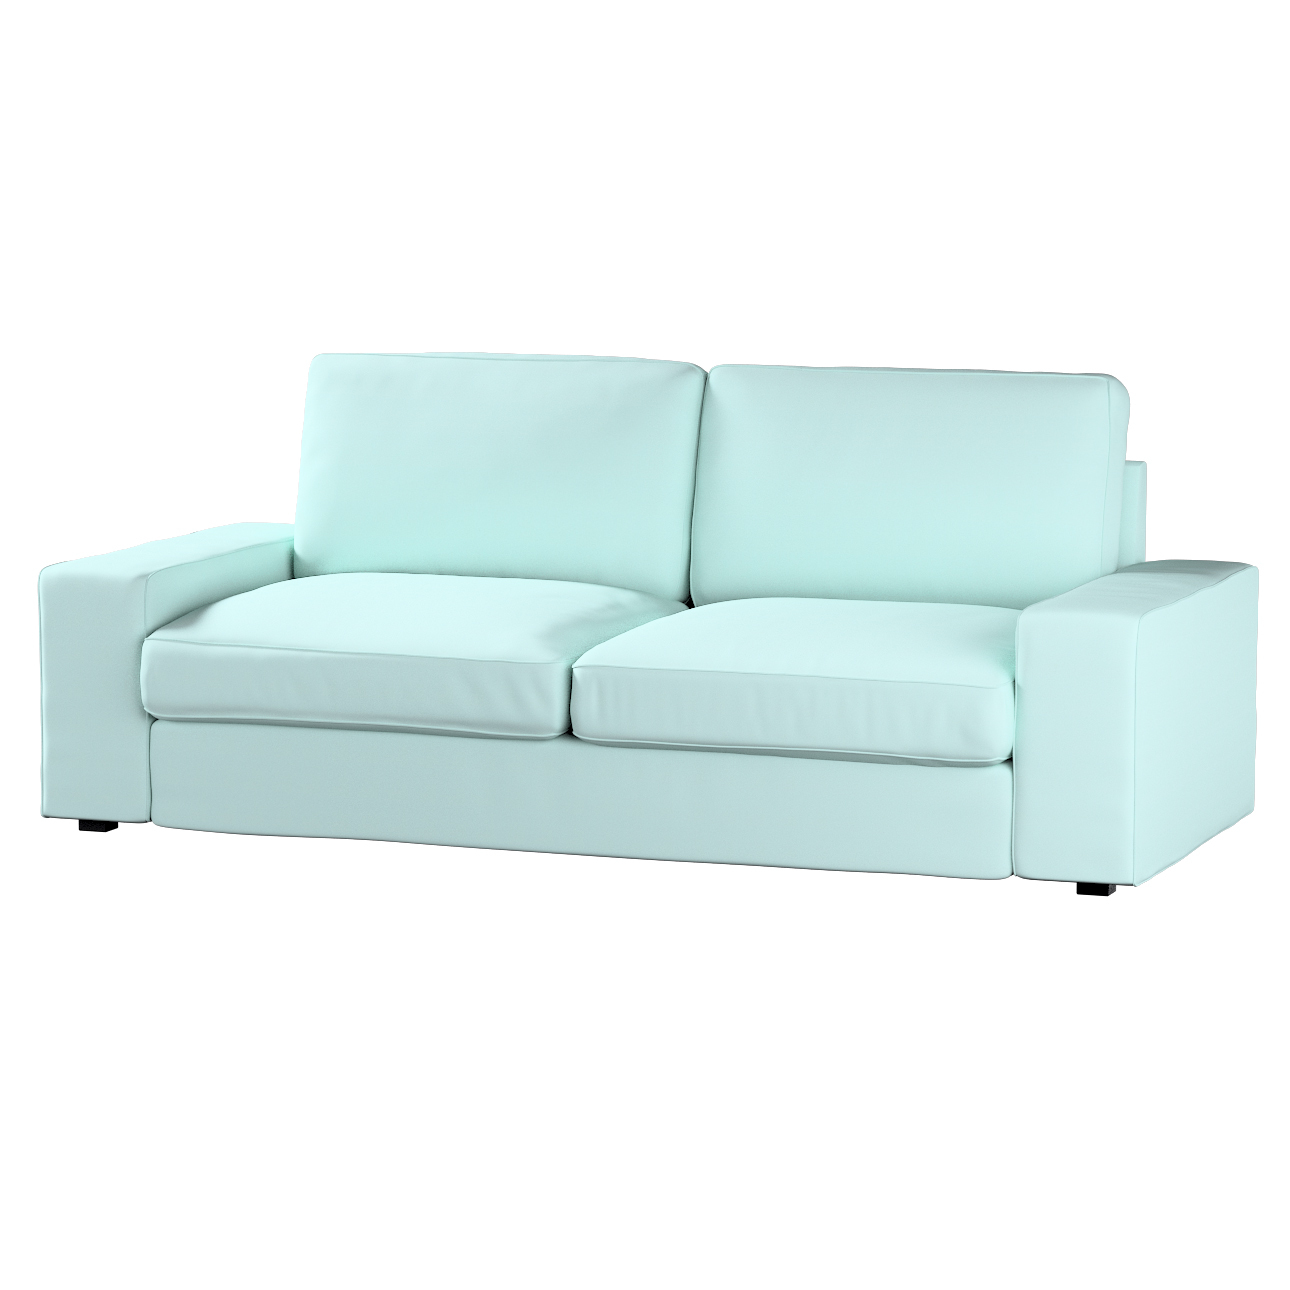 Bezug für Kivik 3-Sitzer Sofa, hellblau, Bezug für Sofa Kivik 3-Sitzer, Cot günstig online kaufen